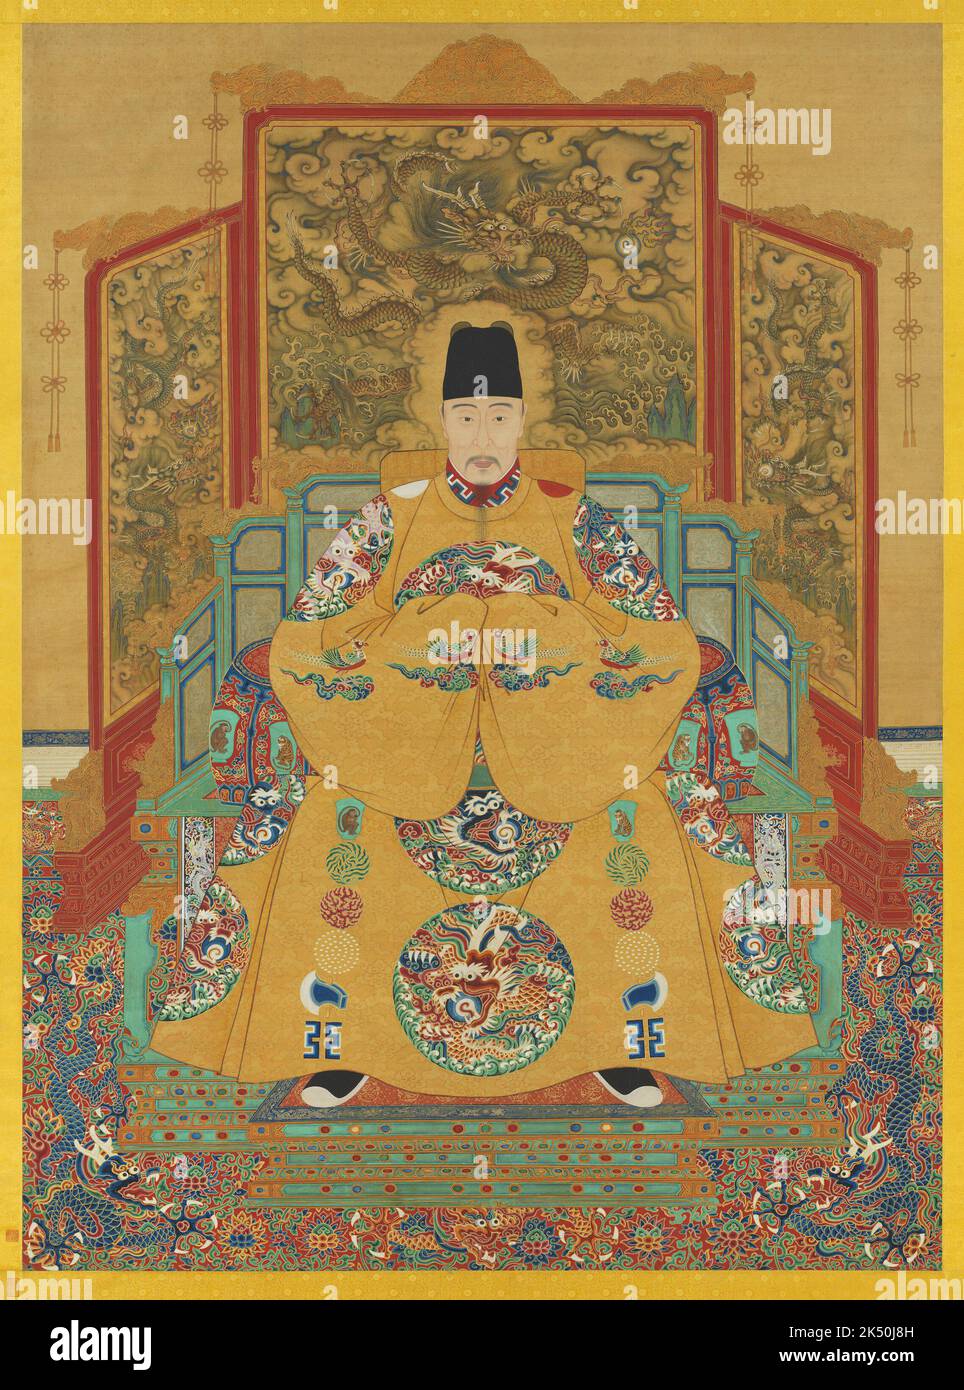 Cina: Imperatore Jiajing (16 settembre 1507 - 23 gennaio 1567), dodicesimo sovrano della dinastia Ming (r. 1521-1567). Pittura a chiocciola sospesa, XVI-XVII secolo. L'Imperatore Jiajing (1507-1567), nome personale Zhu Houcong e nome del tempio Shizong, fu il 12° Imperatore della Dinastia Ming. Il suo nome d'epoca significa 'Admirable tranquility'. Dopo 45 anni sul trono (il secondo regno più lungo della dinastia Ming), l'Imperatore Jiajing morì nel 1567, probabilmente a causa di un sovradosaggio di mercurio, e gli succedette il figlio, l'Imperatore Longqing. Foto Stock